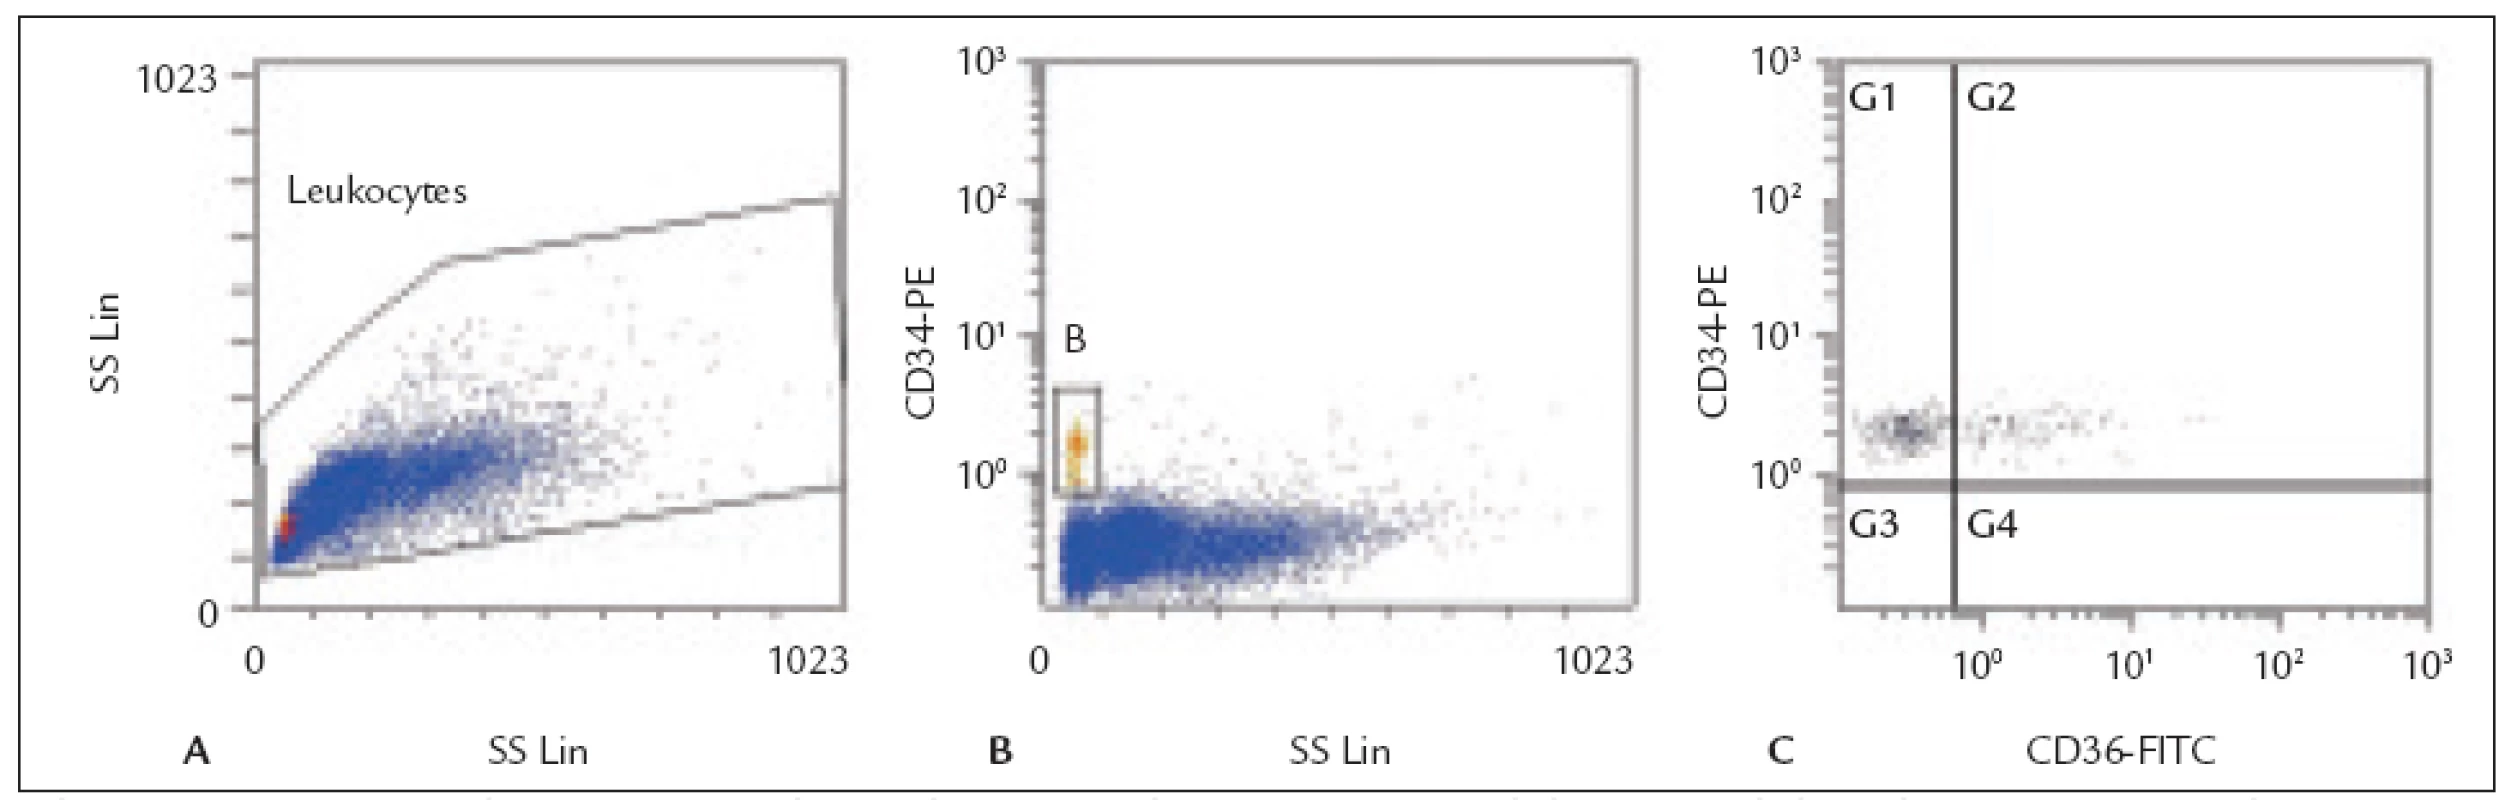 Histogramy z flow cytometrické analýzy transplantátu periferních kmenových buněk (PBSC).
A: Leukocyty – gating na histogramu forward-scatter (FS) vs. side-scatter (SS). 
B: CD34&lt;sup&gt;+&lt;/sup&gt; buňky (gate B) identifikované na histogramu CD34 PE vs. side-scatter (SS). 
C: Exprese antigenu CD36 na CD34&lt;sup&gt;+&lt;/sup&gt; buňkách – histogram CD34 PE vs. CD36 FITC (subpopulace
CD34&lt;sup&gt;+&lt;/sup&gt;36&lt;sup&gt;+&lt;/sup&gt; buněk se nachází v kvadrantu G2).